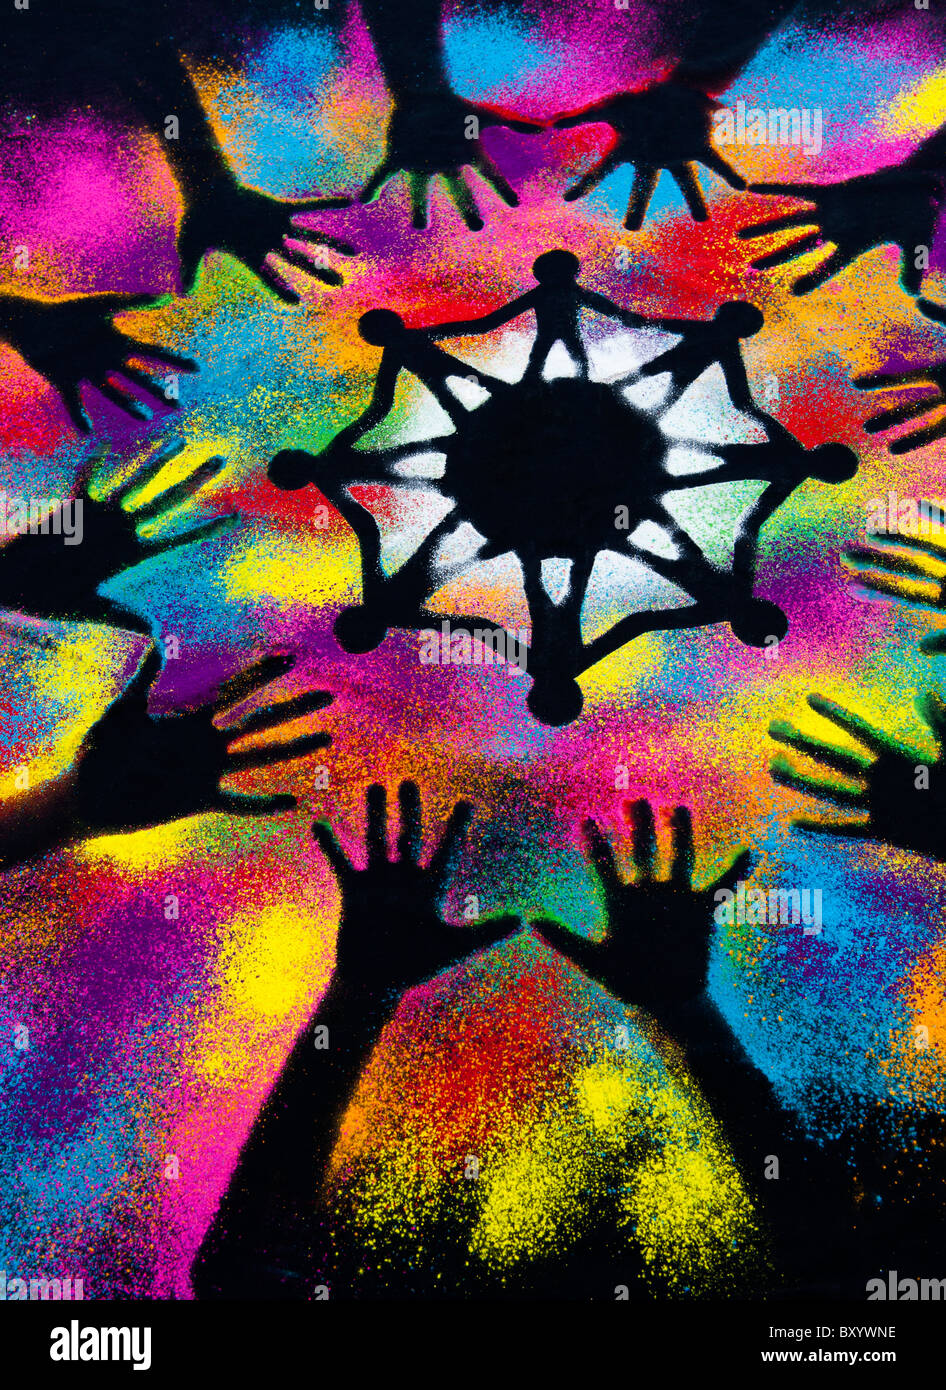 Un símbolo de unidad mundial rodeado por mano infantil impresiones realizadas con polvo multicolor Foto de stock